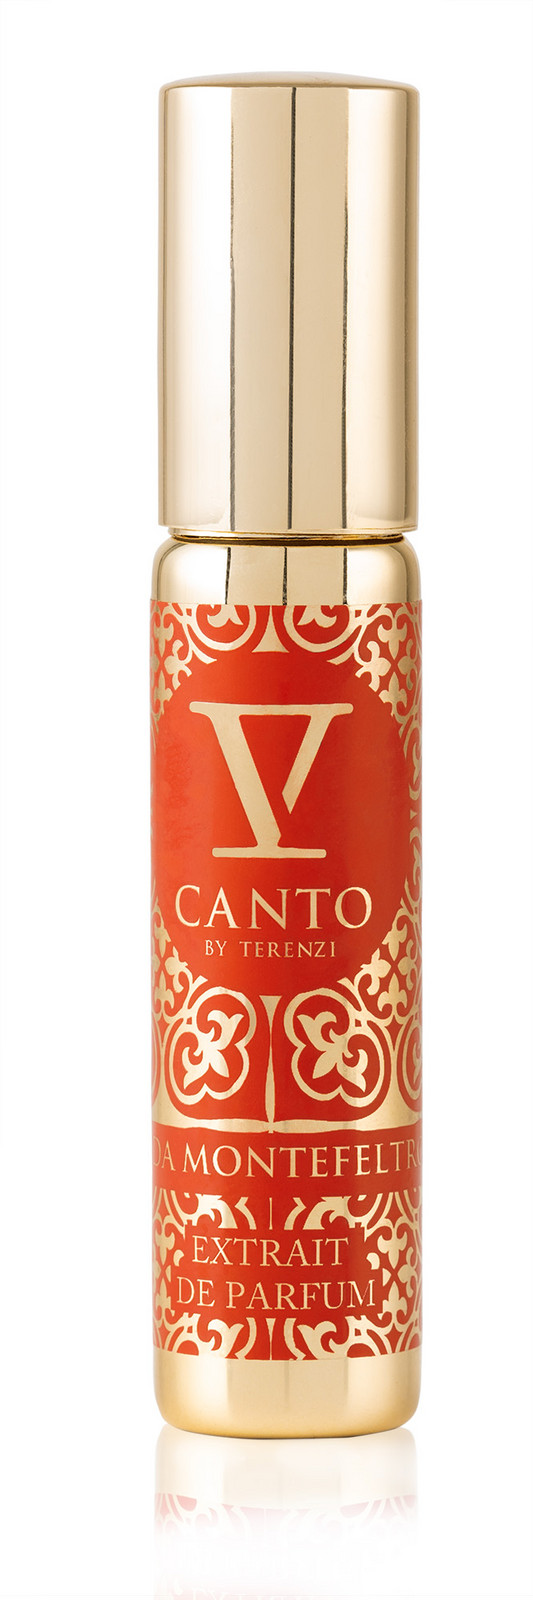 V Canto F. Da Montefeltro - parfémovaný extrakt 15 ml